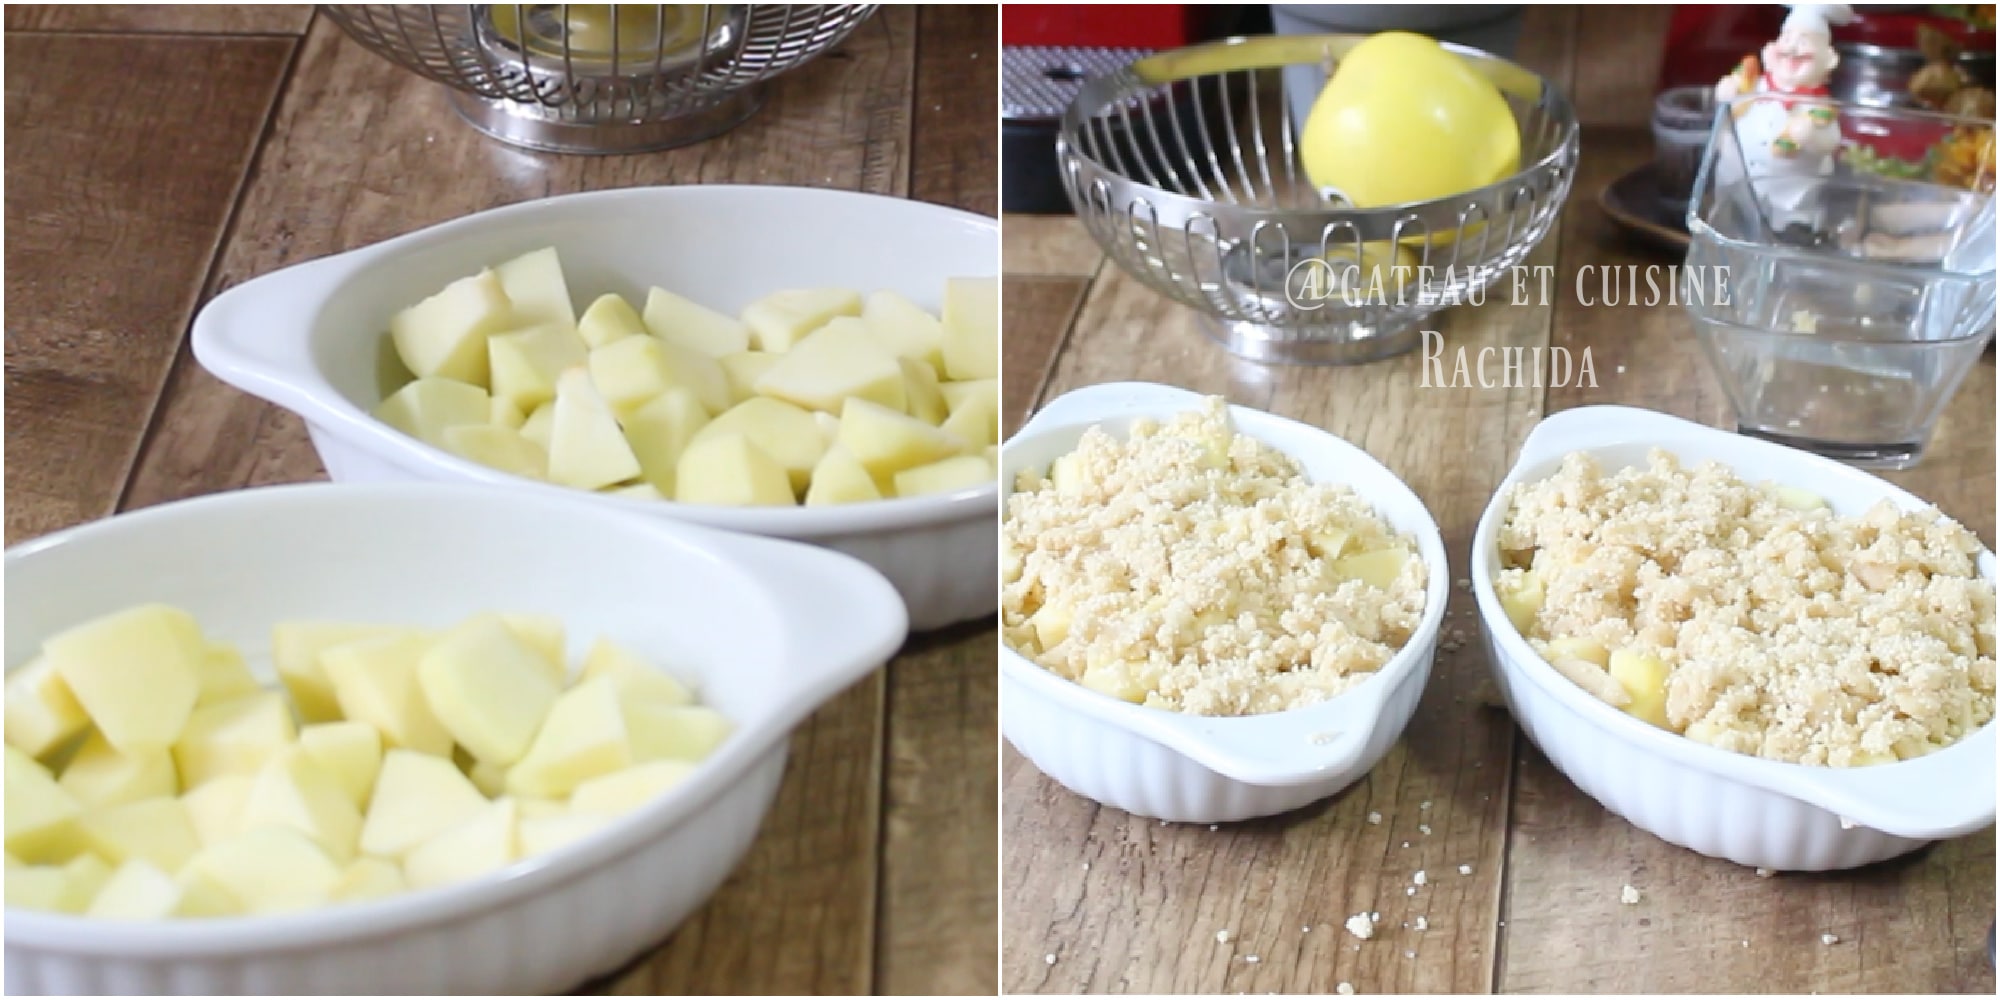 La recette traditionnelle du crumble aux pommes